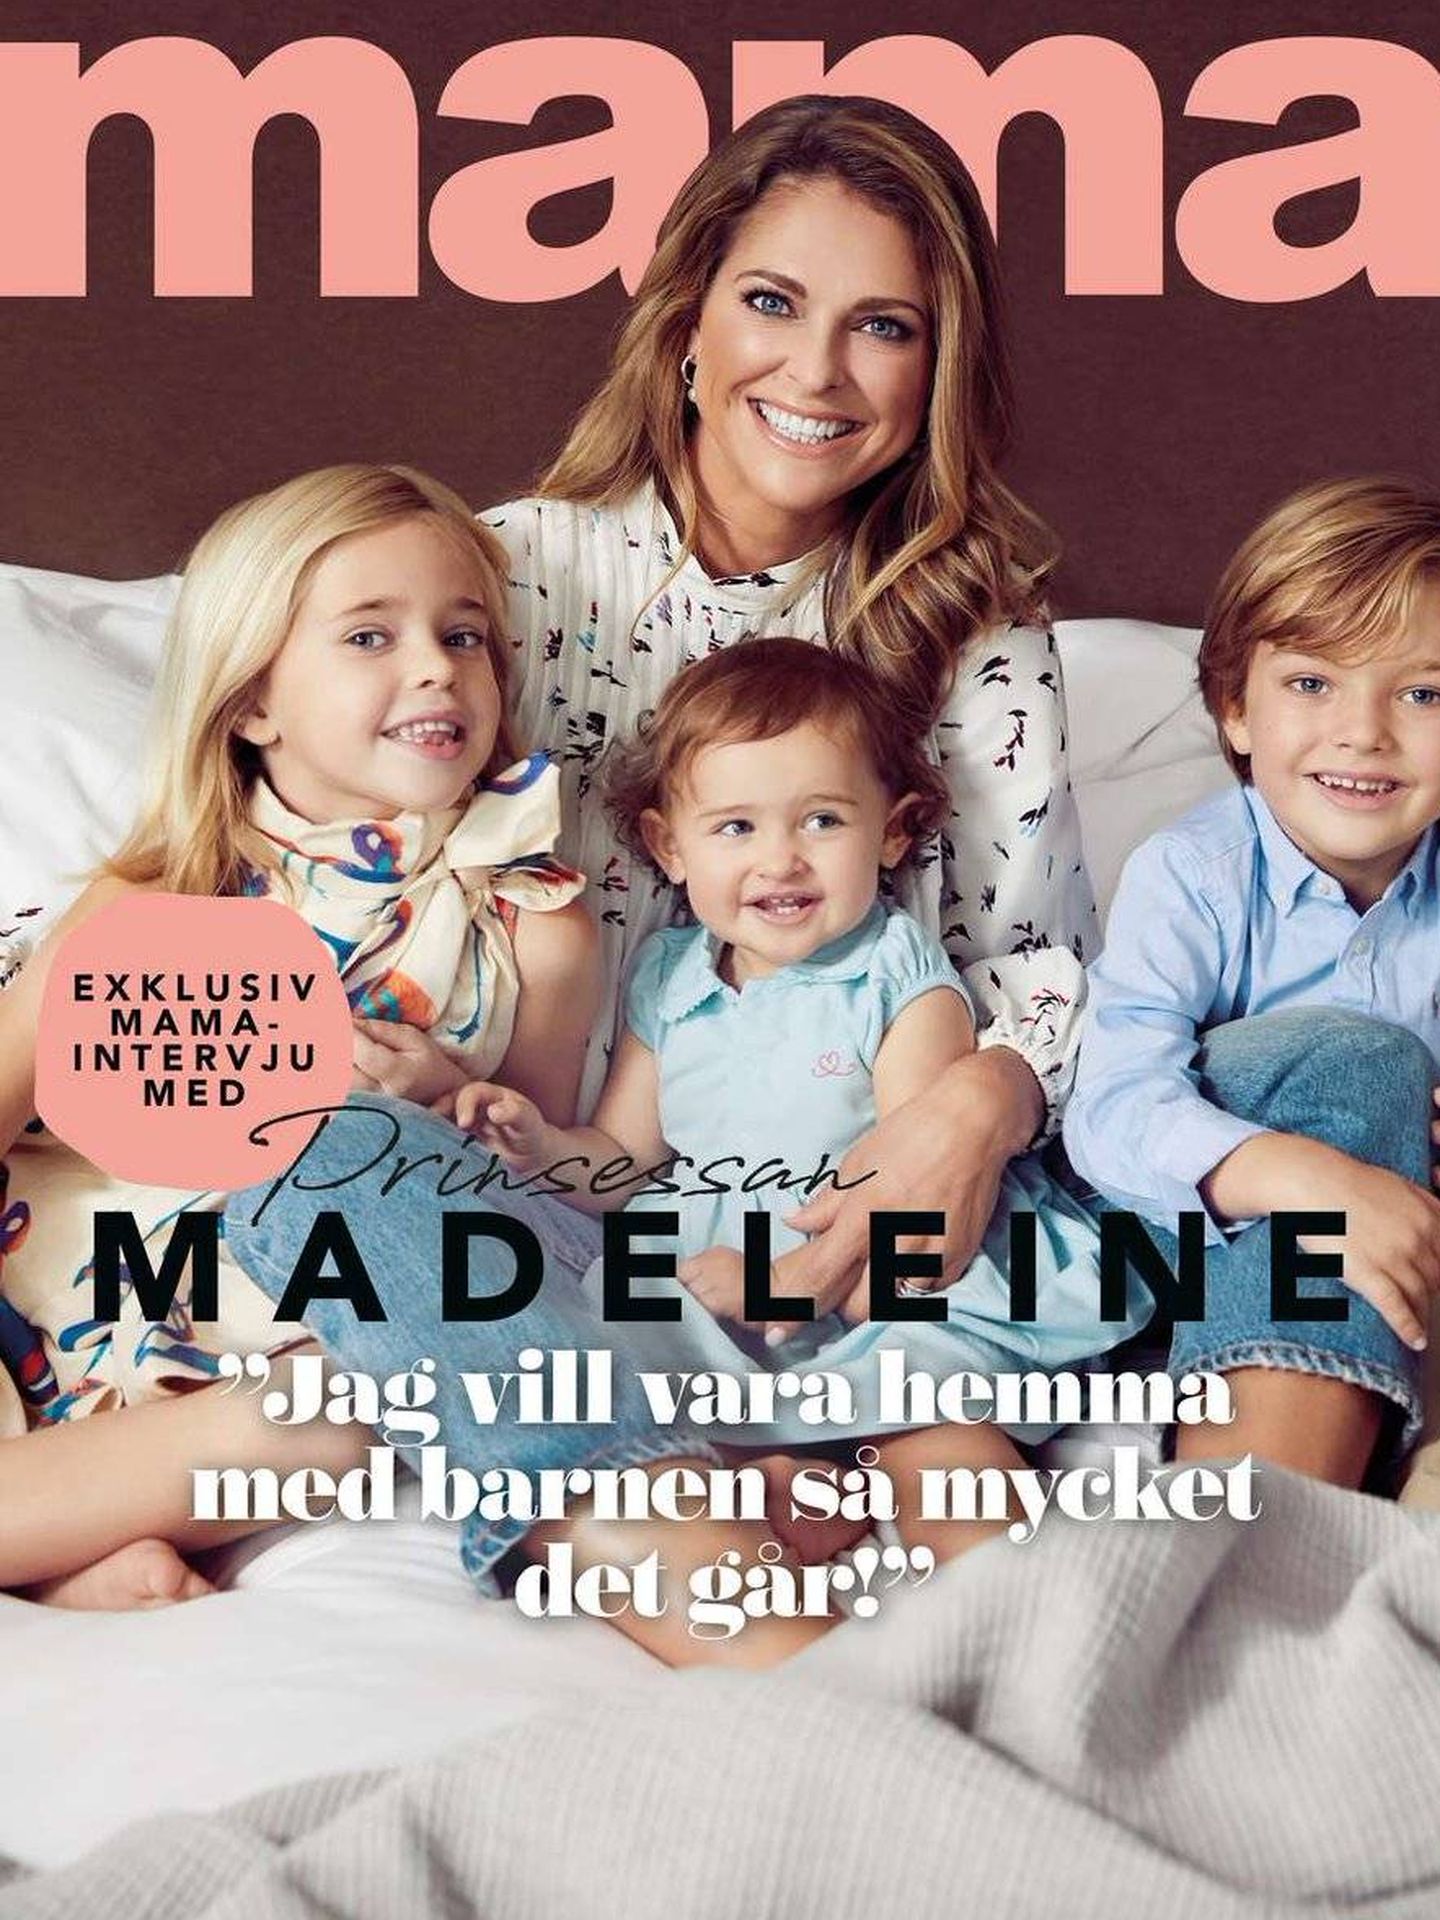 Magdalena con sus tres hijos.